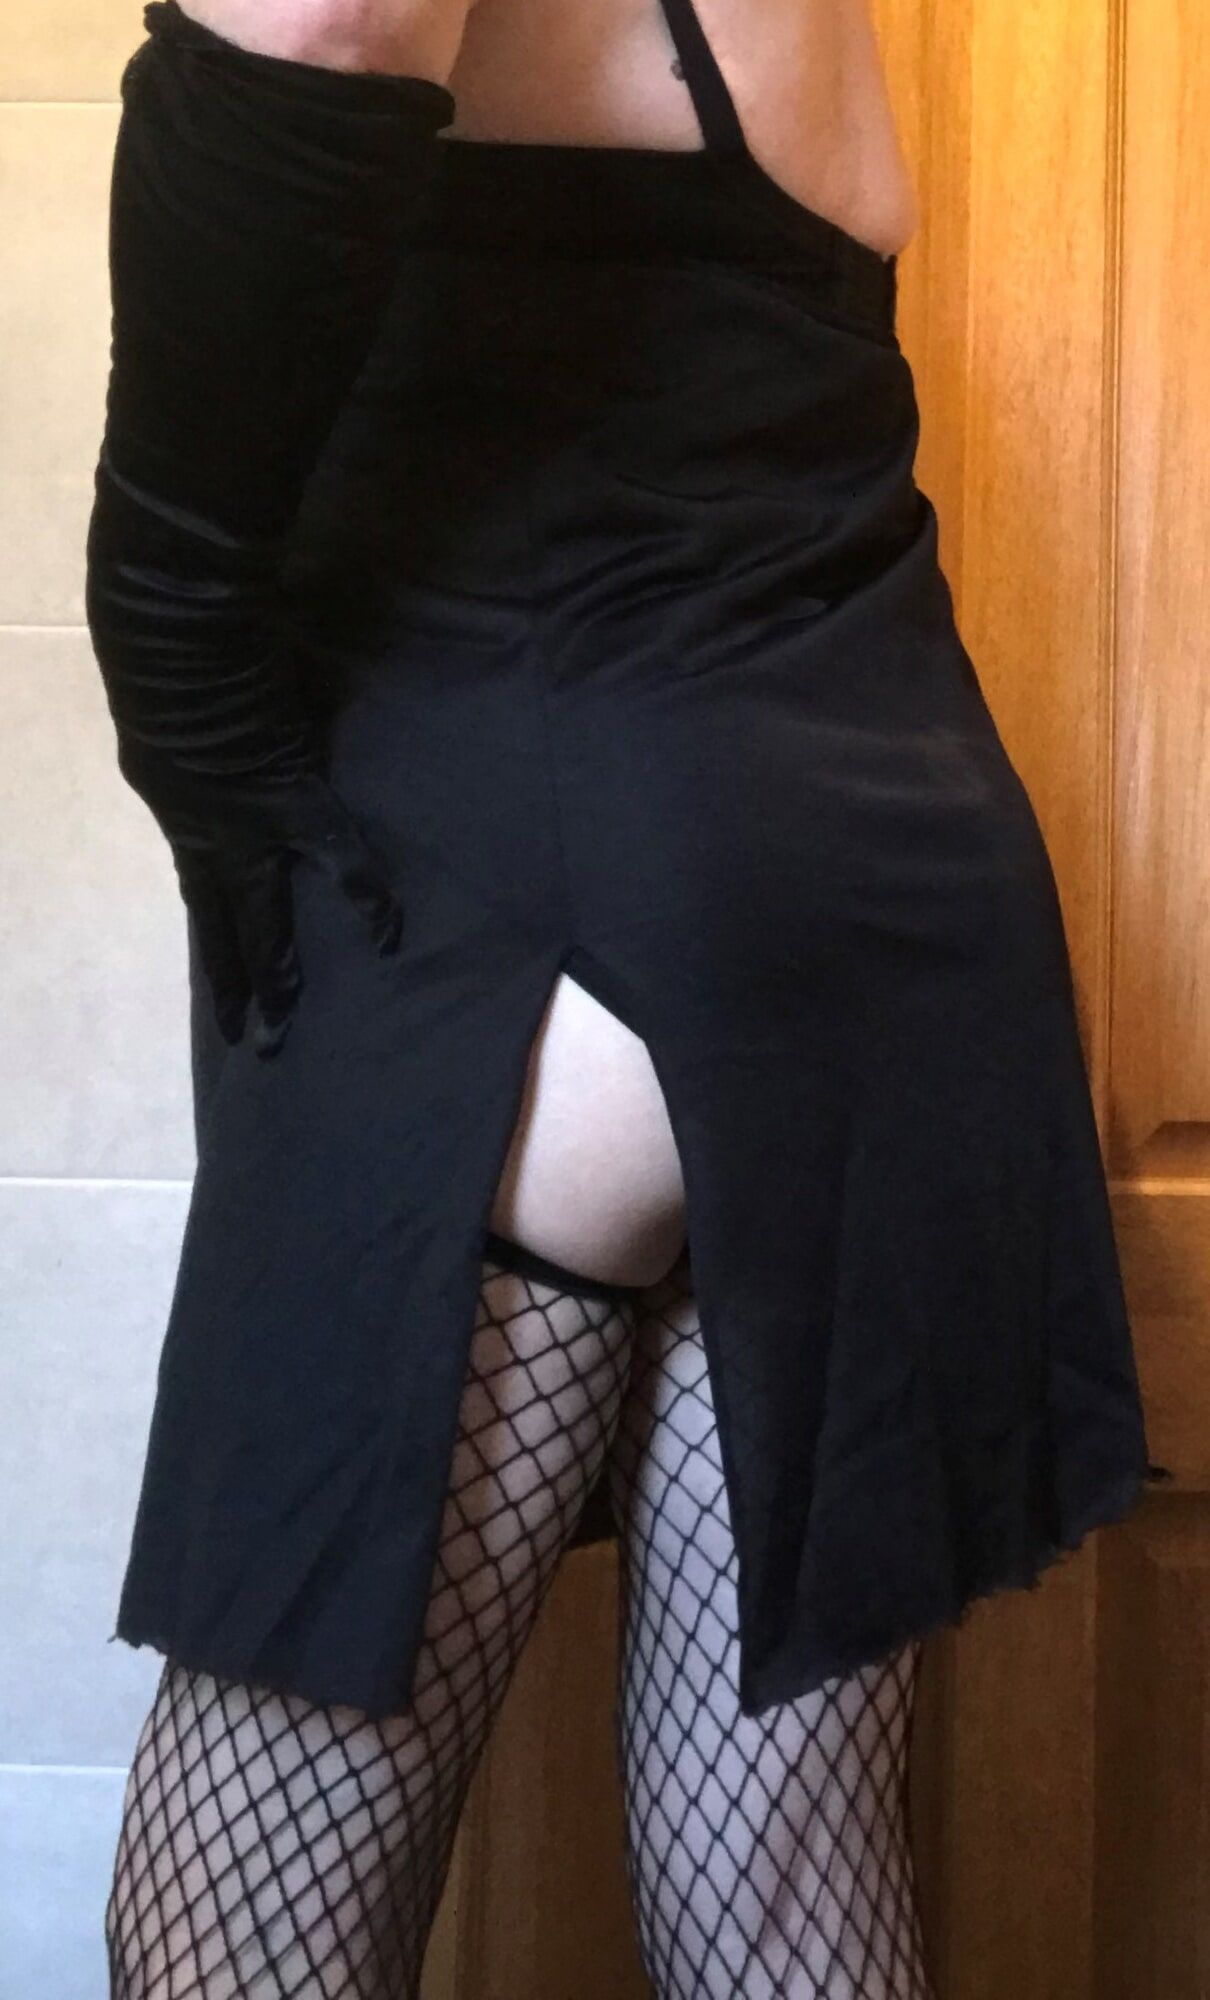 horny slut in fishnet stockings